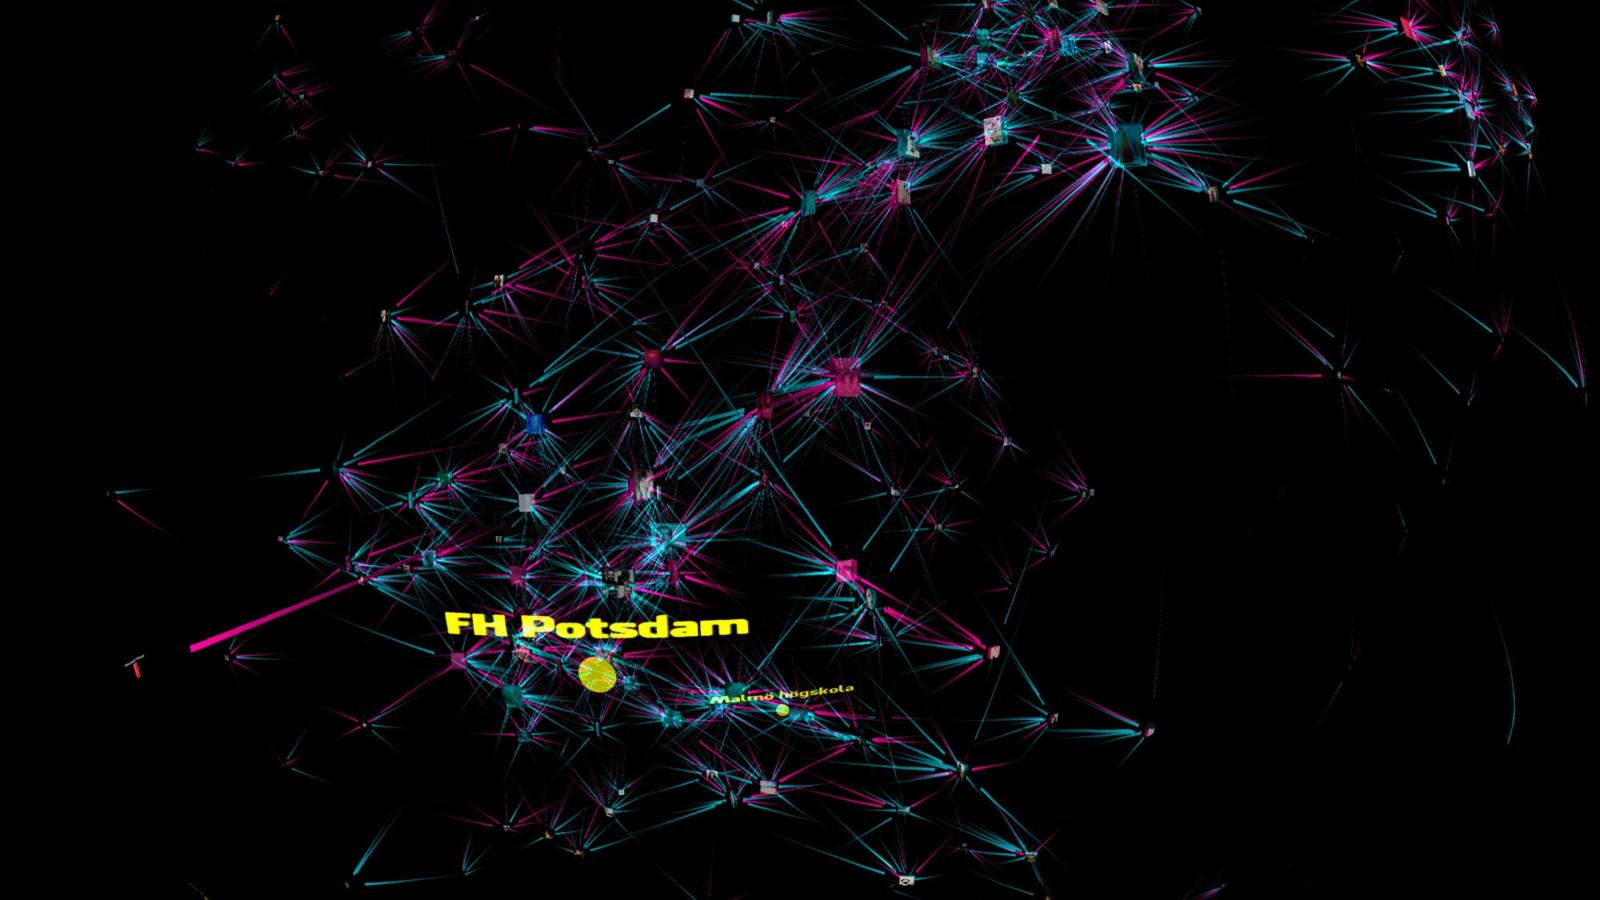 Visualisierung des Facebook-Freundschaftsnetzwerks der Fachhochschule Potsdam über die Kuppelprojektionsanlage Domebook